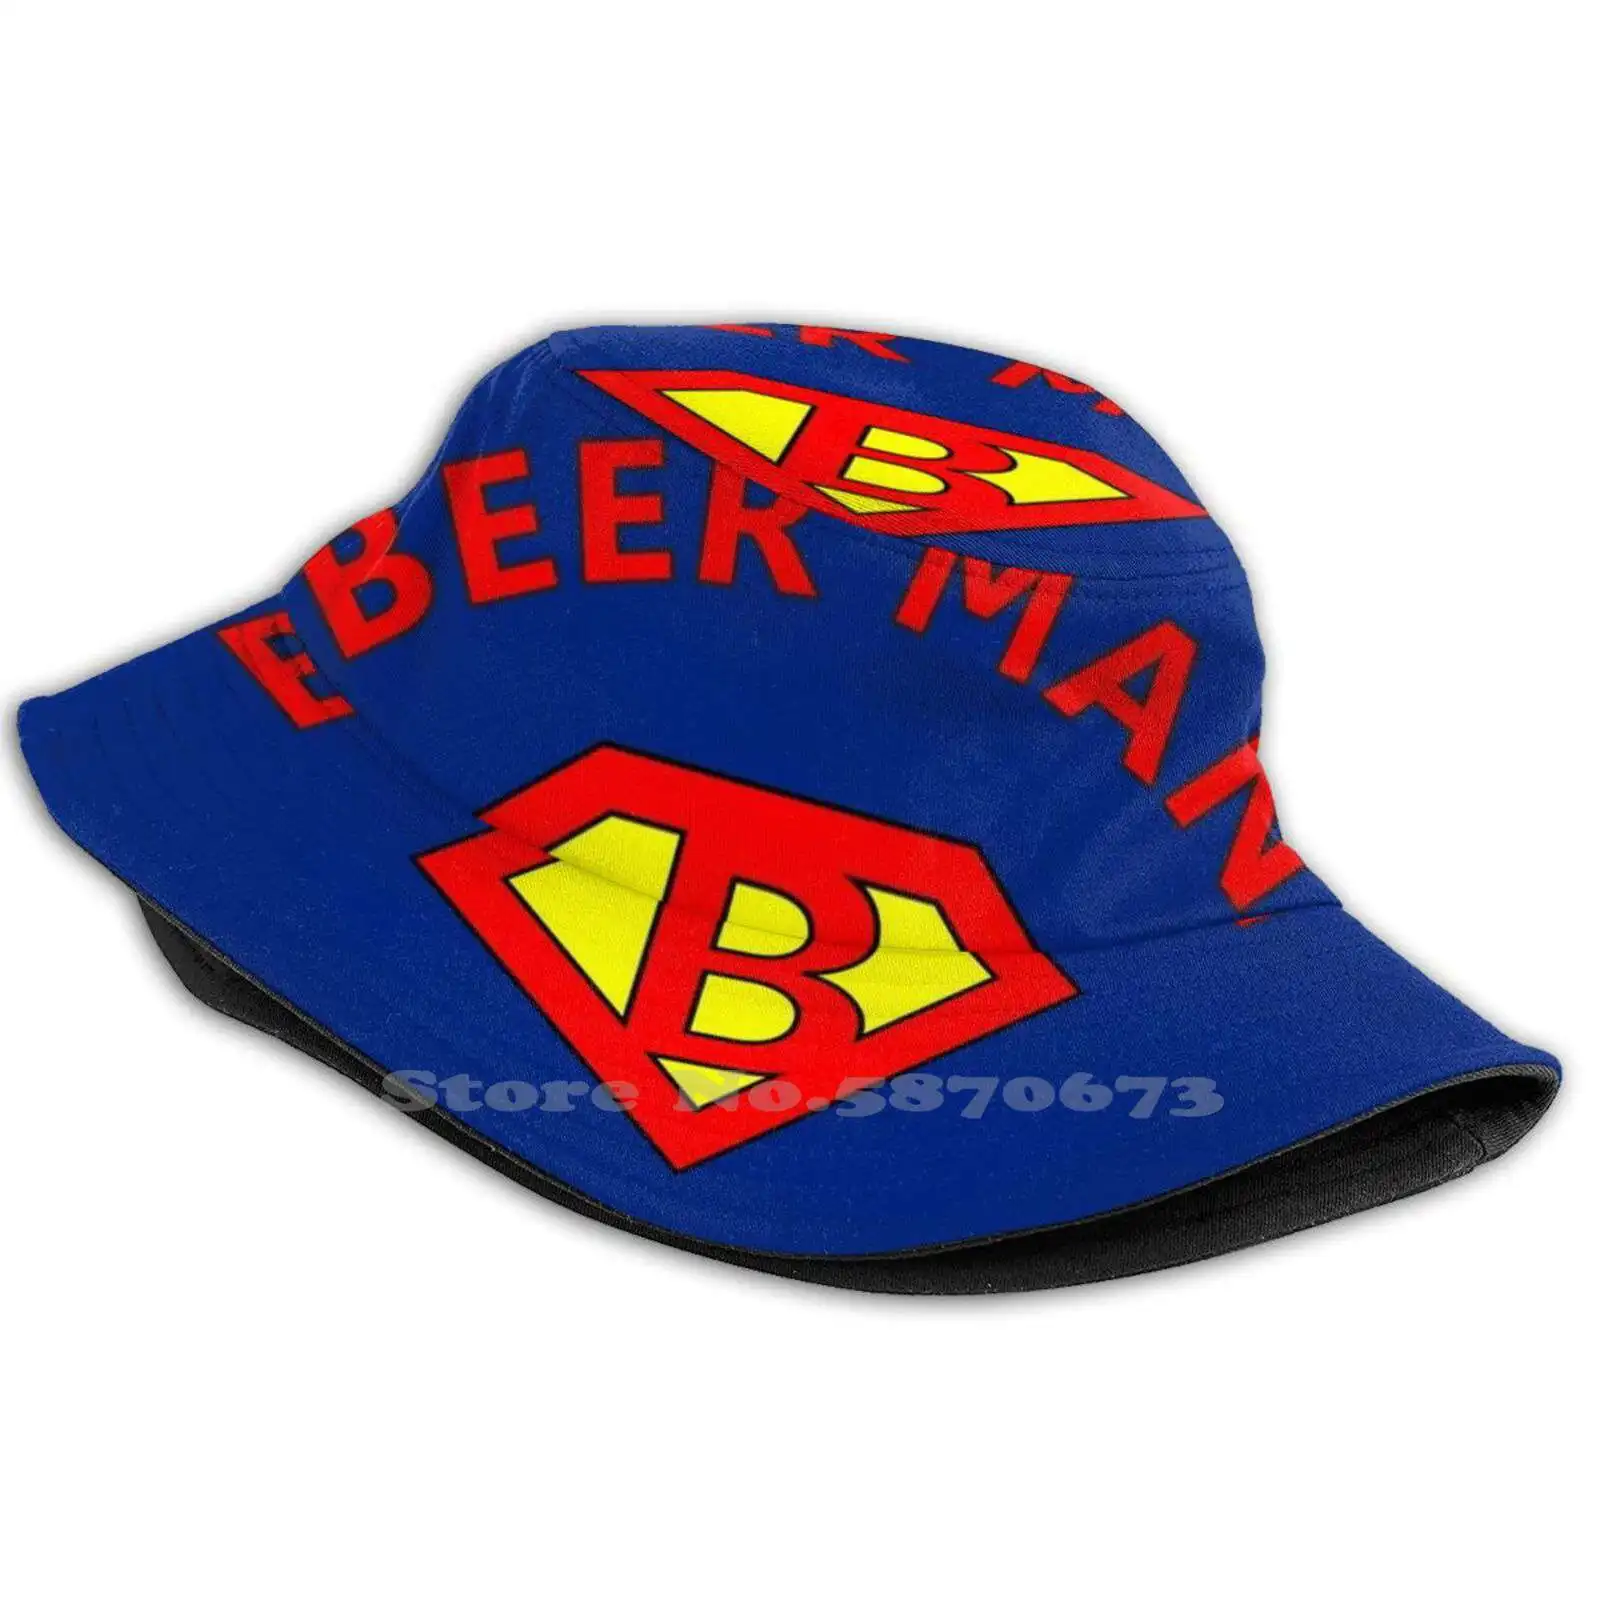 

Шляпа для рыбаков Beerman, Панама, кепки Beerman, карикатура, комиксы, юмор, суперлоготип человека из стали, супергерои, пивная Лорель